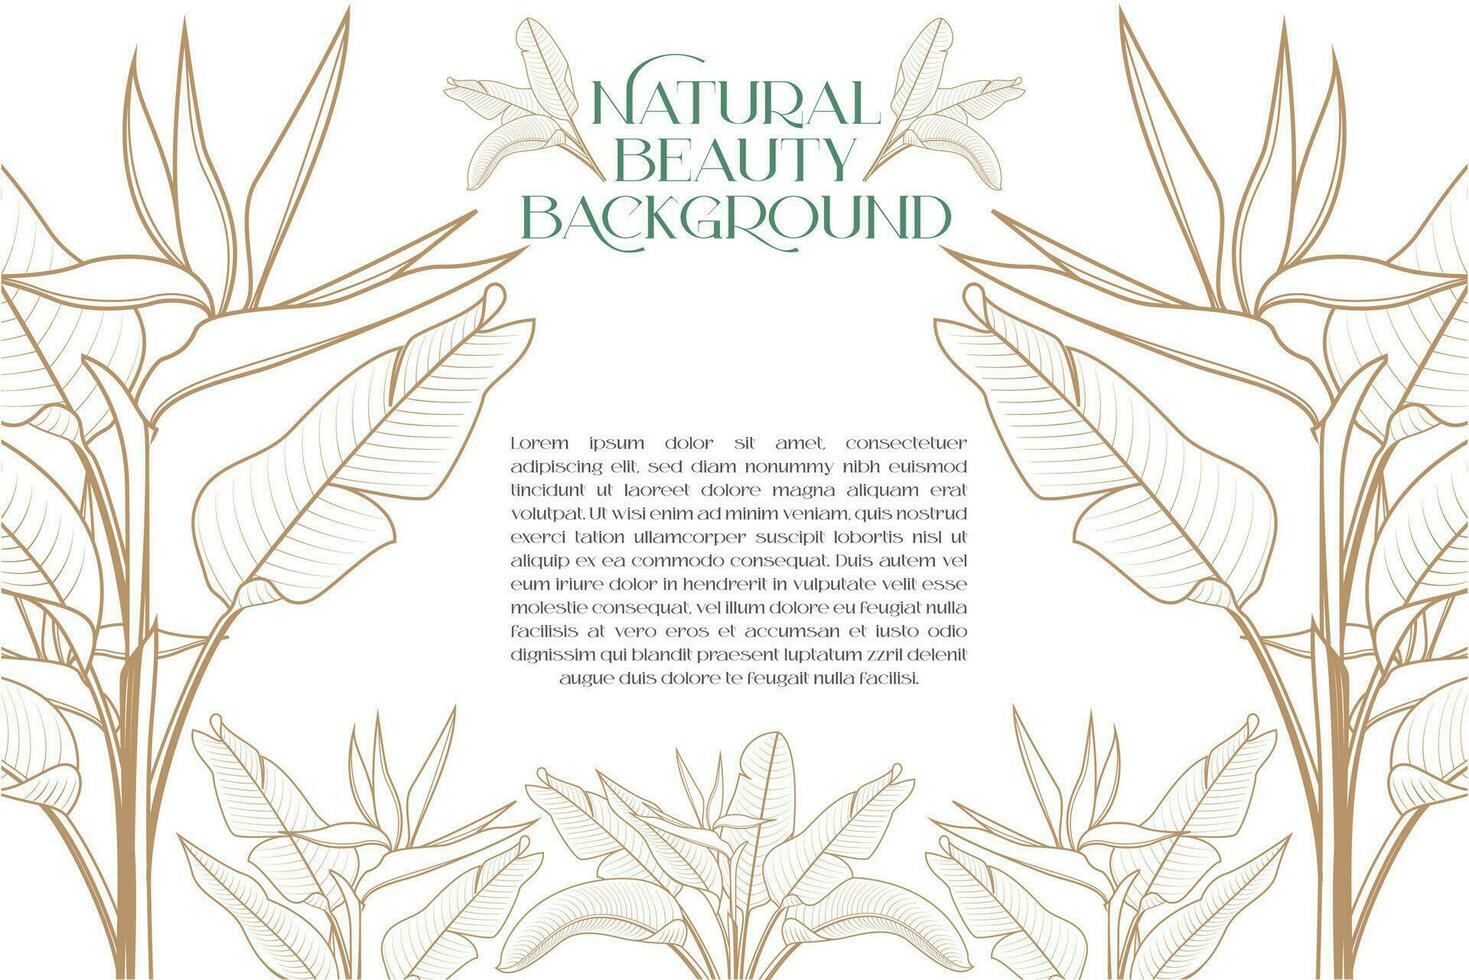 heliconia le foglie floreale vettore design modello come sfondo per cosmetico e terme naturale bellezza etichette